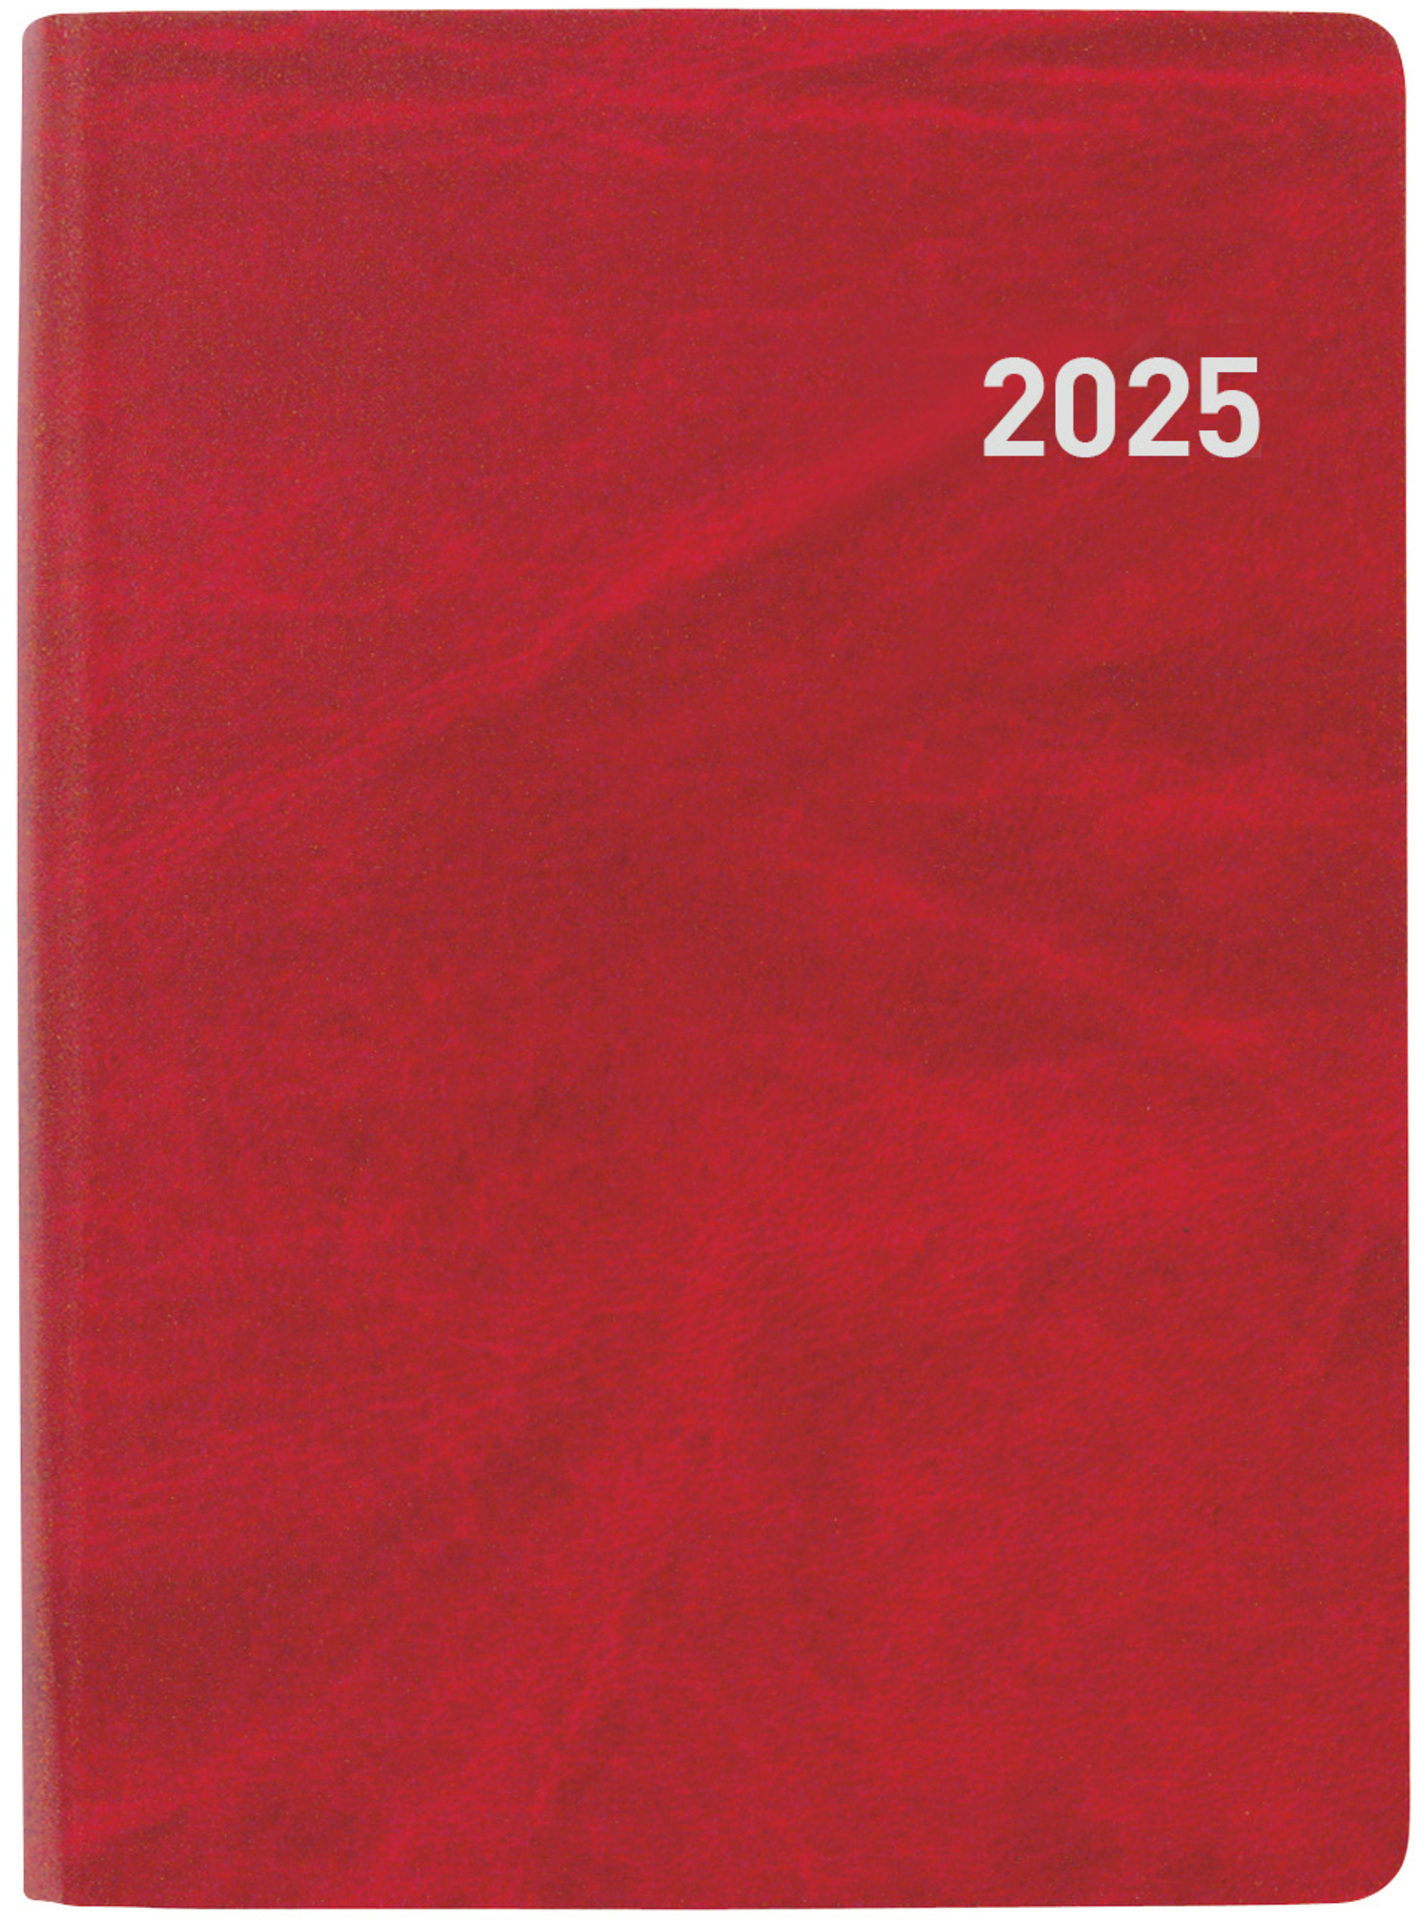 BIELLA Agenda Memento 2025 825401450025 1S/2P rouge ML 10.1x14.2cm